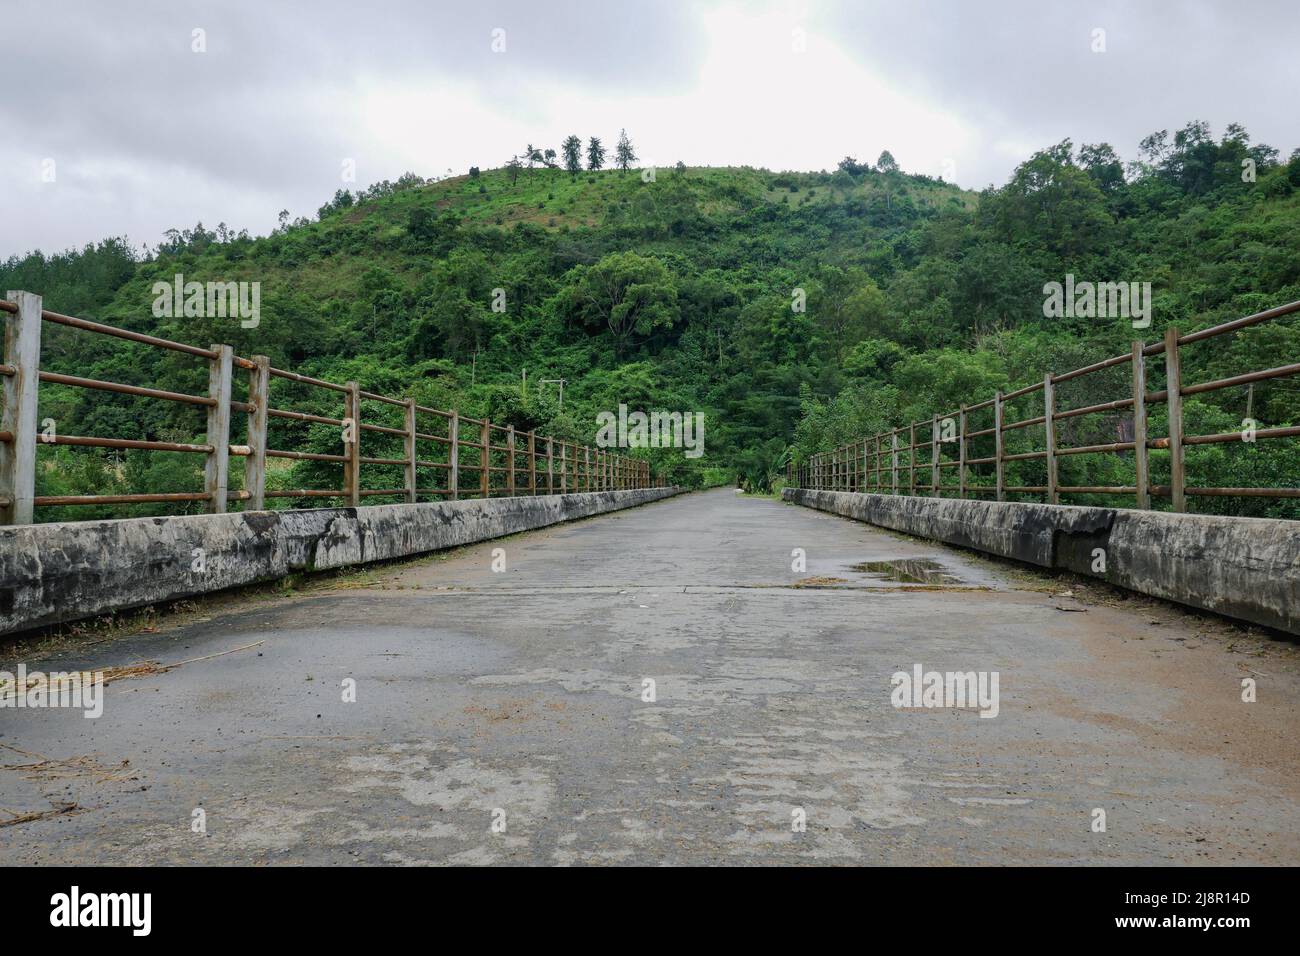 An empty bridge on Kiwirar River in Mbeya, Tanzania Stock Photo